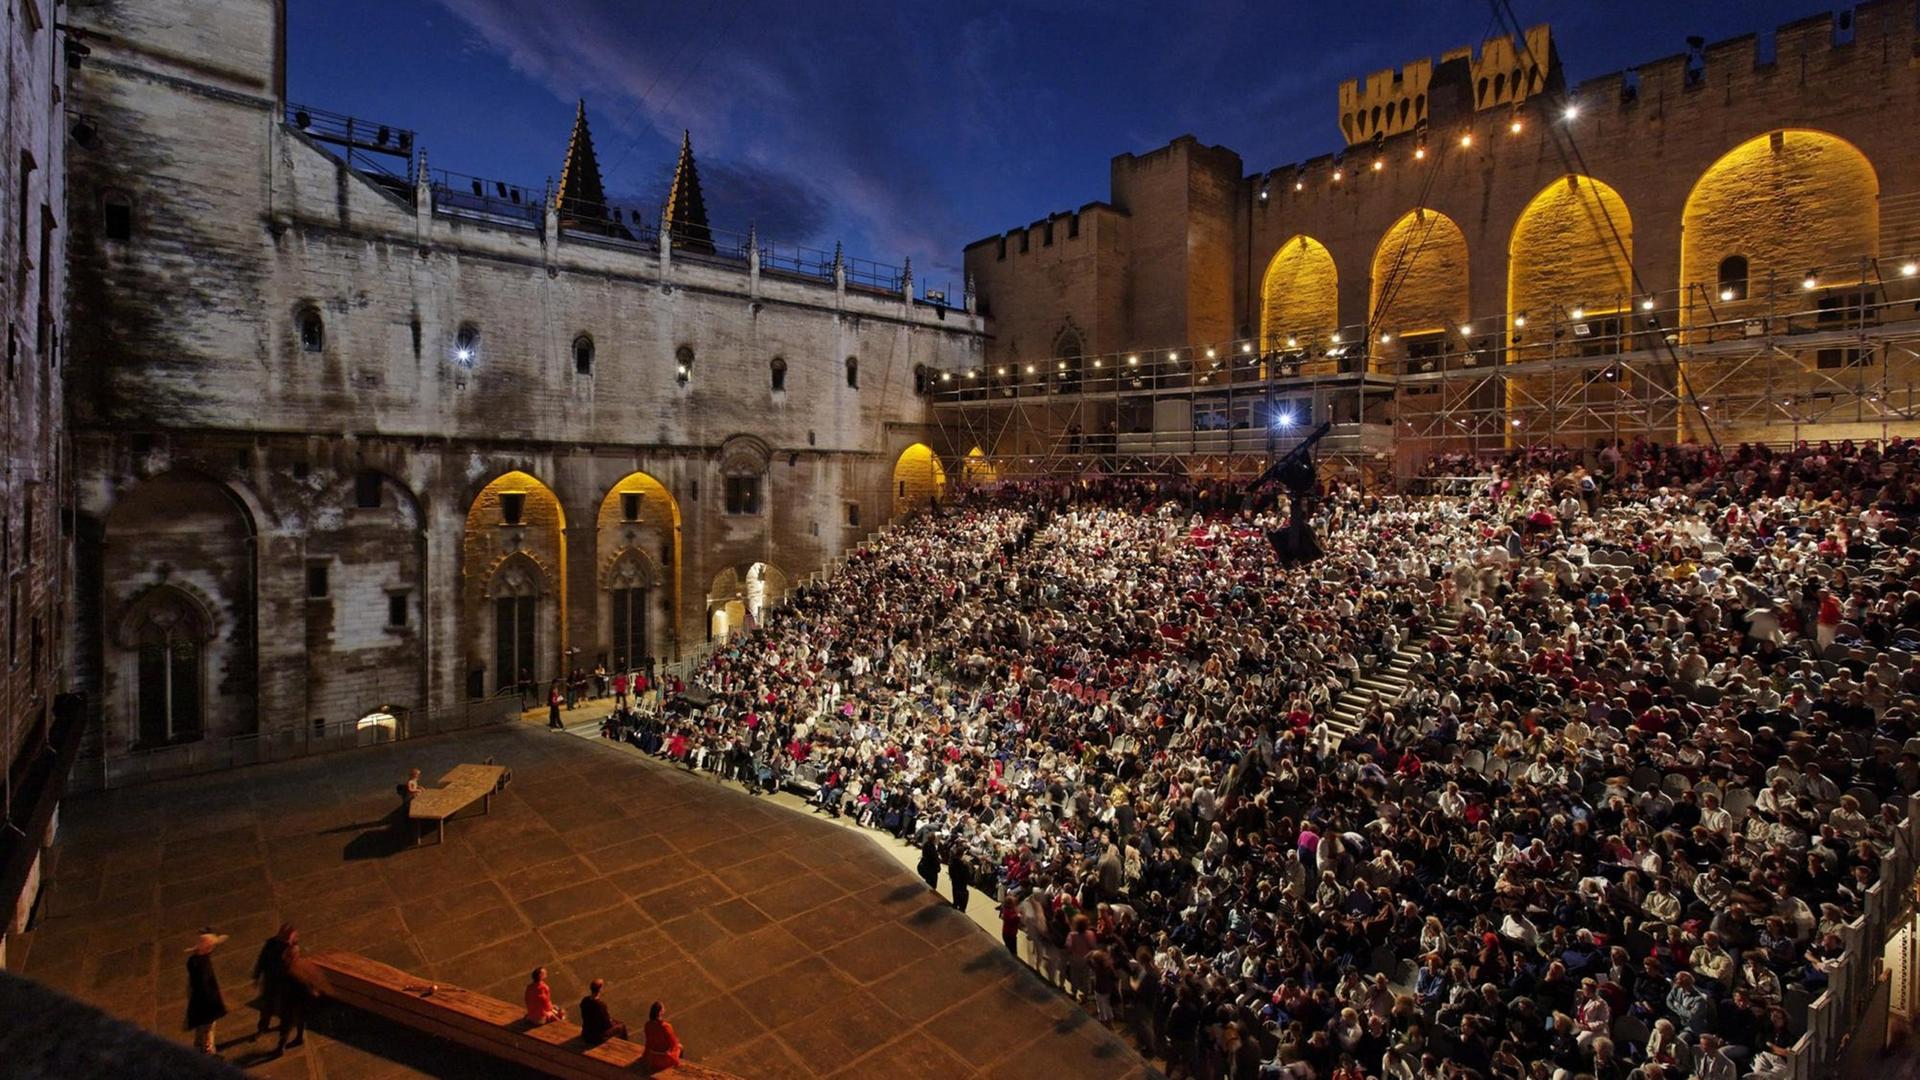 Der Ehrenhof des Papstpalastes in der Altstadt von Avignon während einer Festival-Veranstaltung.